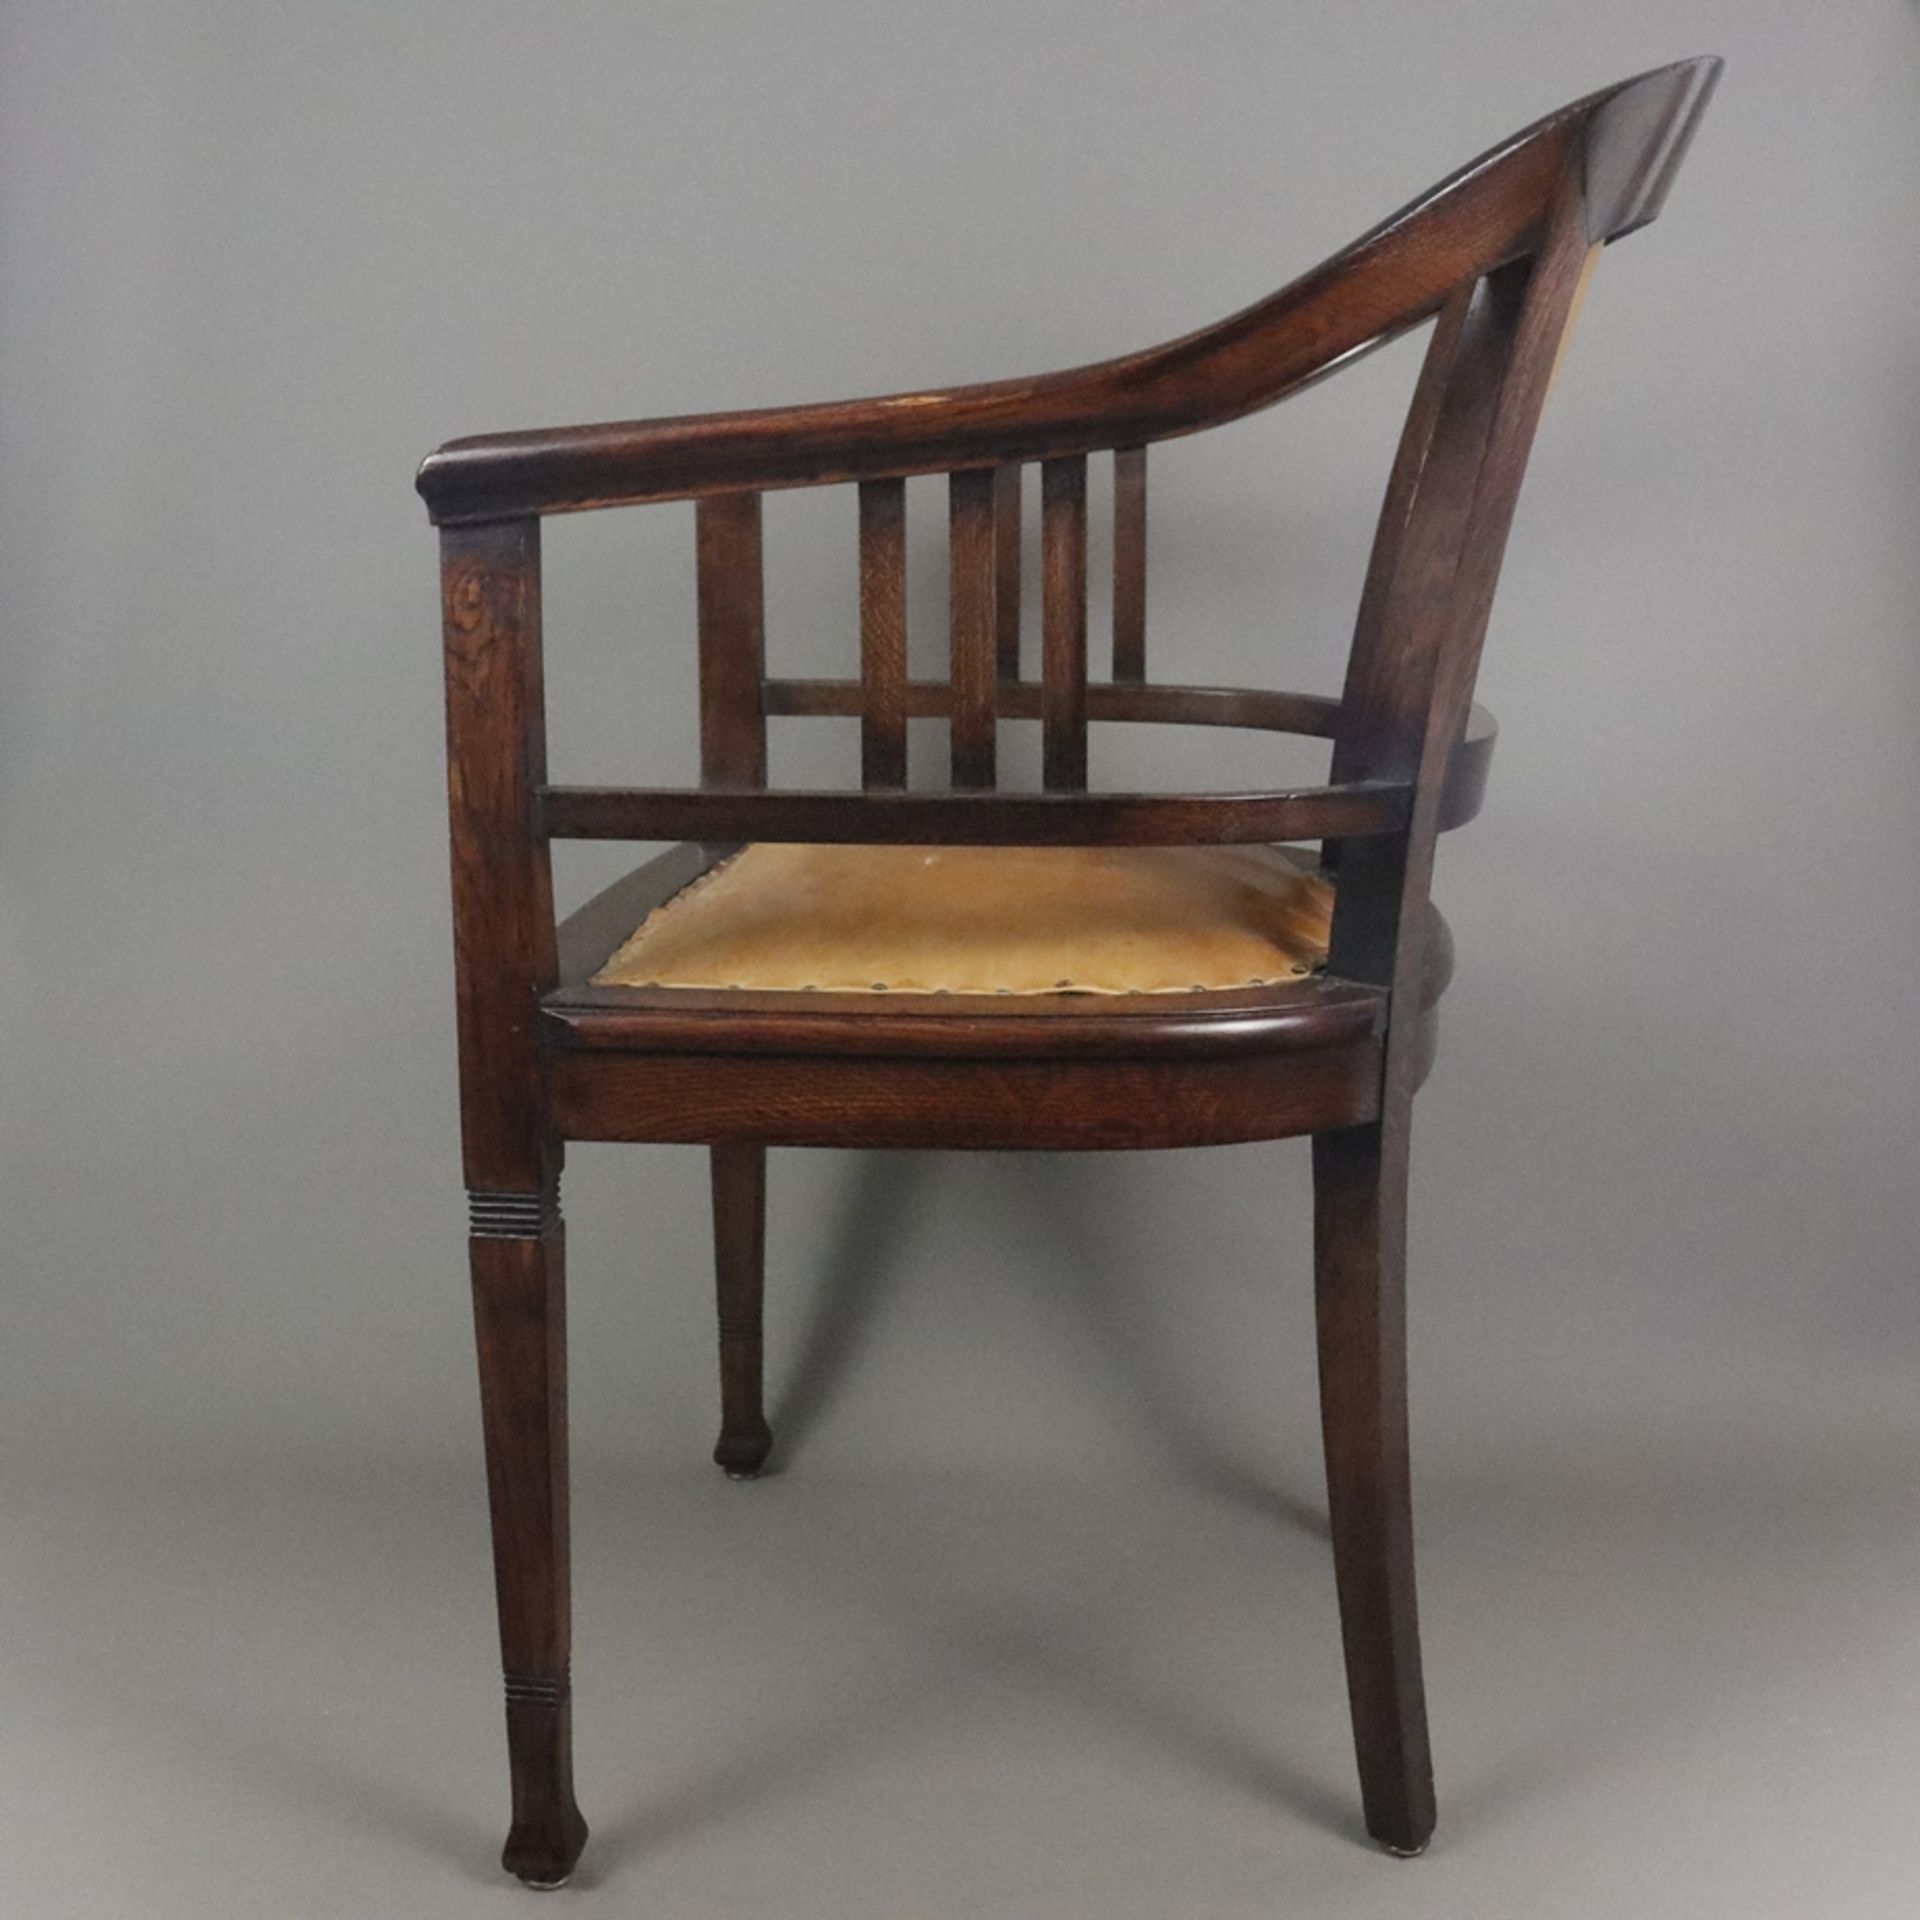 Jugendstil-Armlehnstuhl - um 1910, Holz, dunkel gebeizt, halbrunder Armlehnstuhl mit Vierkantbeinen - Bild 10 aus 12